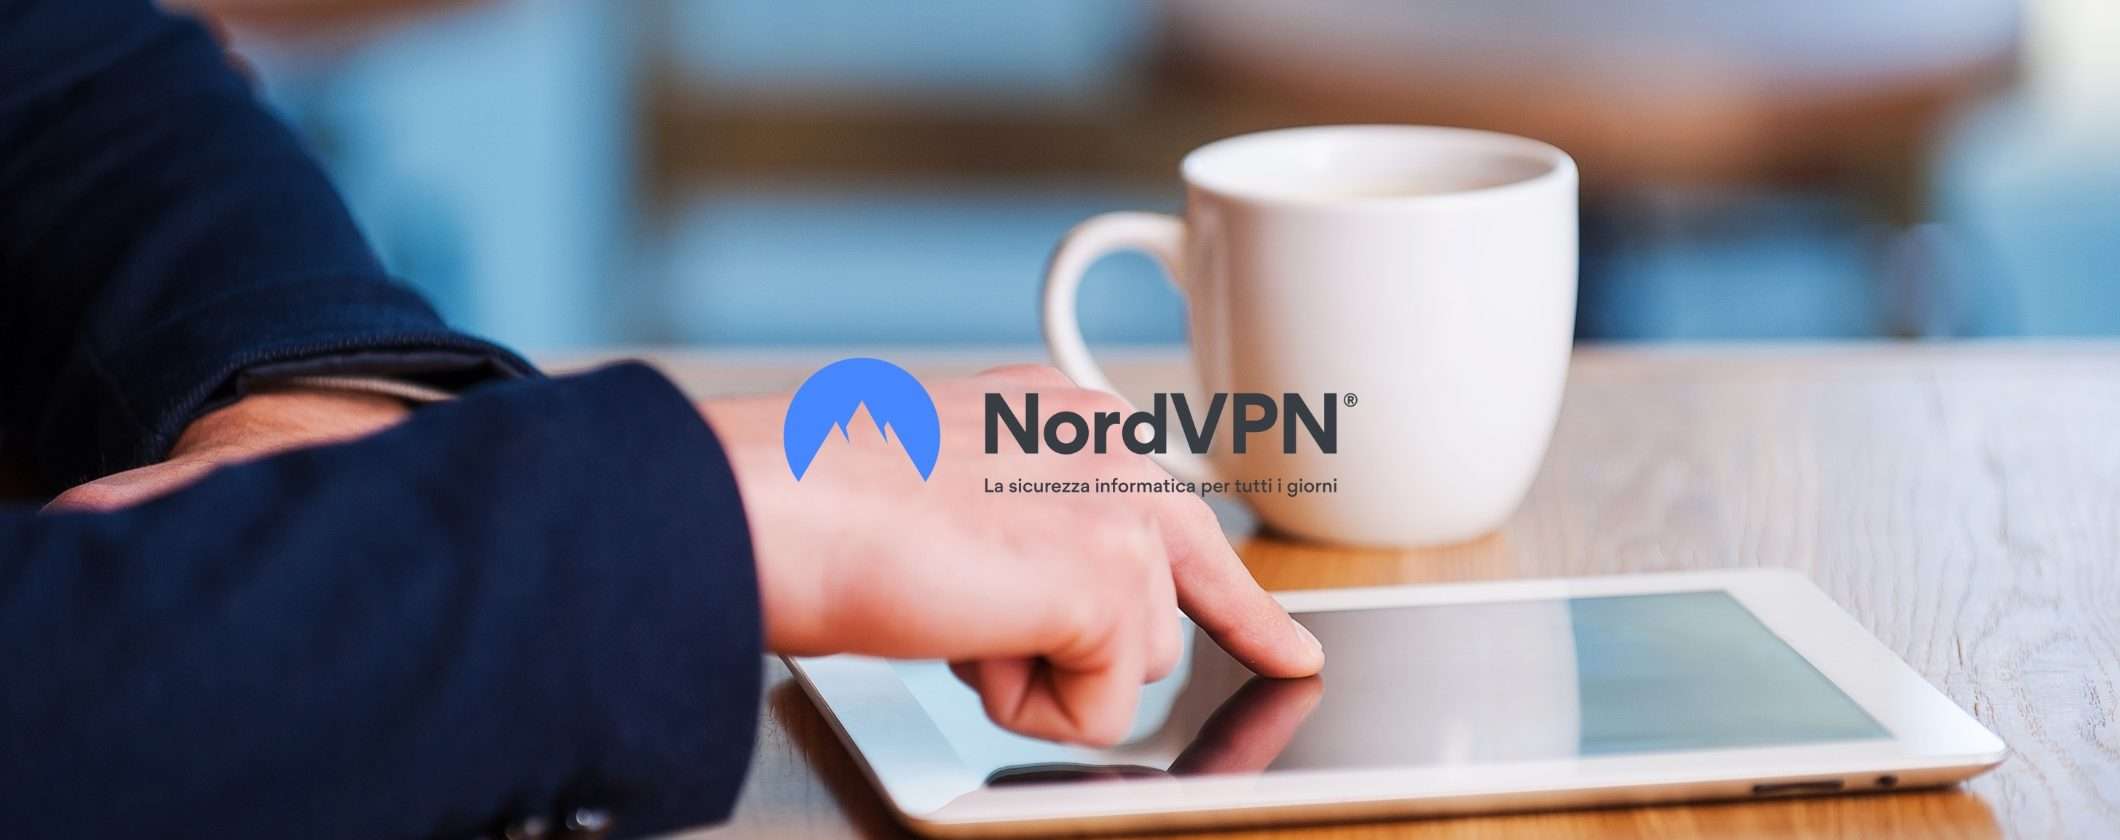 Collegati a WiFi pubblici senza pericoli con NordVPN